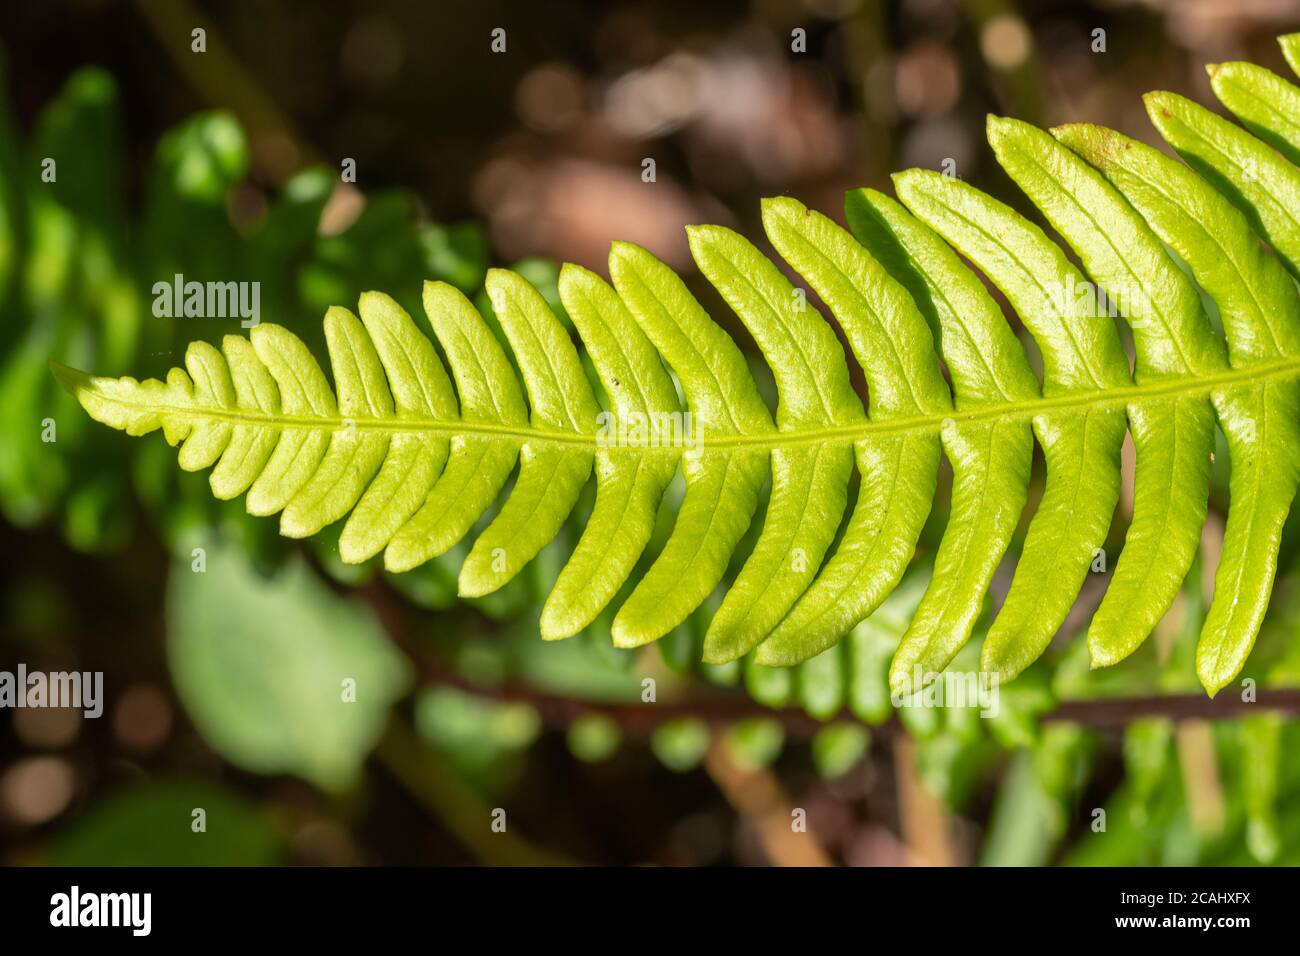 Hardfarn (Blechnum spicant), auch Hirsch Farn genannt, ein lebhafter grüner Farn, der immergrün ist und zwei Arten von Wedeln hat, UK. Nahaufnahme von sterilen Fransen Stockfoto